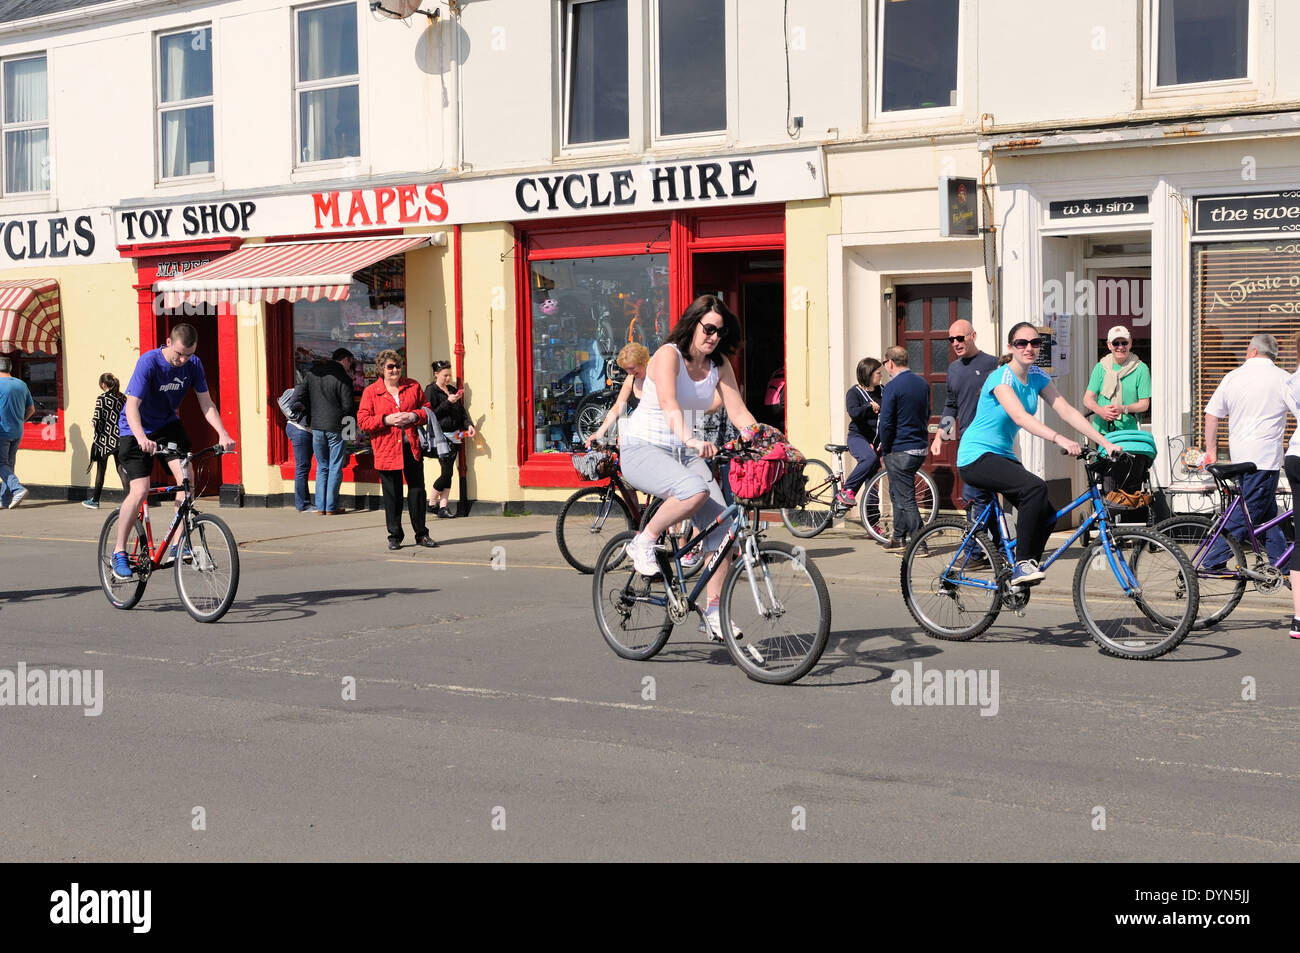 Visiteurs à participer à la ronde du cycle traditionnel de l'île de (Cumbrae). Dans l'arrière-plan est un service de location de vélos et Mapes toy shop à Millport, Ecosse, Royaume-Uni Banque D'Images